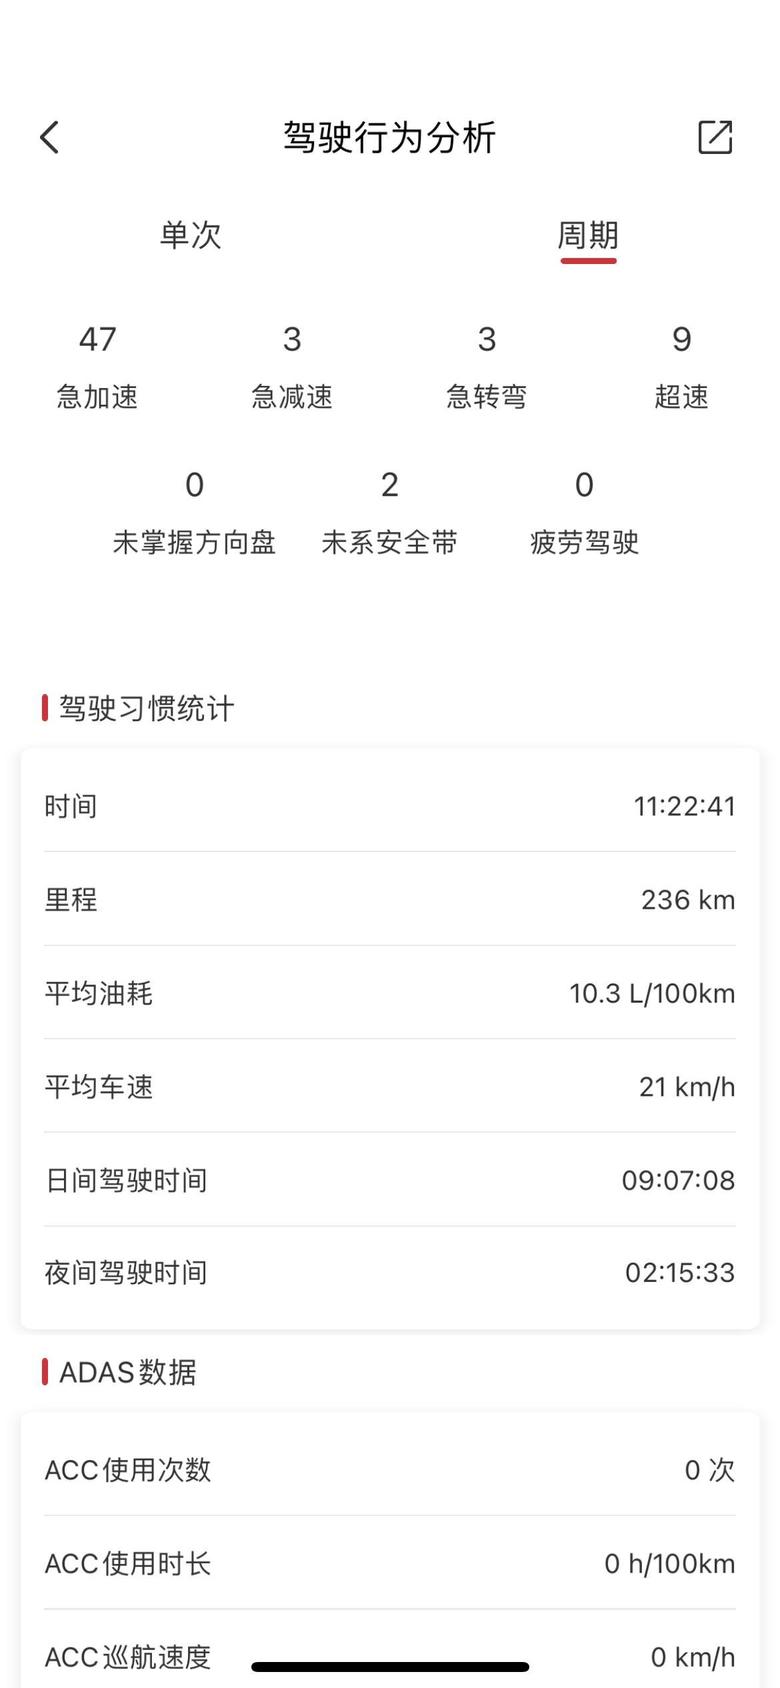 红旗h9这油耗还可以吧。北京城市综合路况2.0。最高记录单次四环39公里堵车3公里6.6。不是堵了一会儿的话悠着开能到6.4。